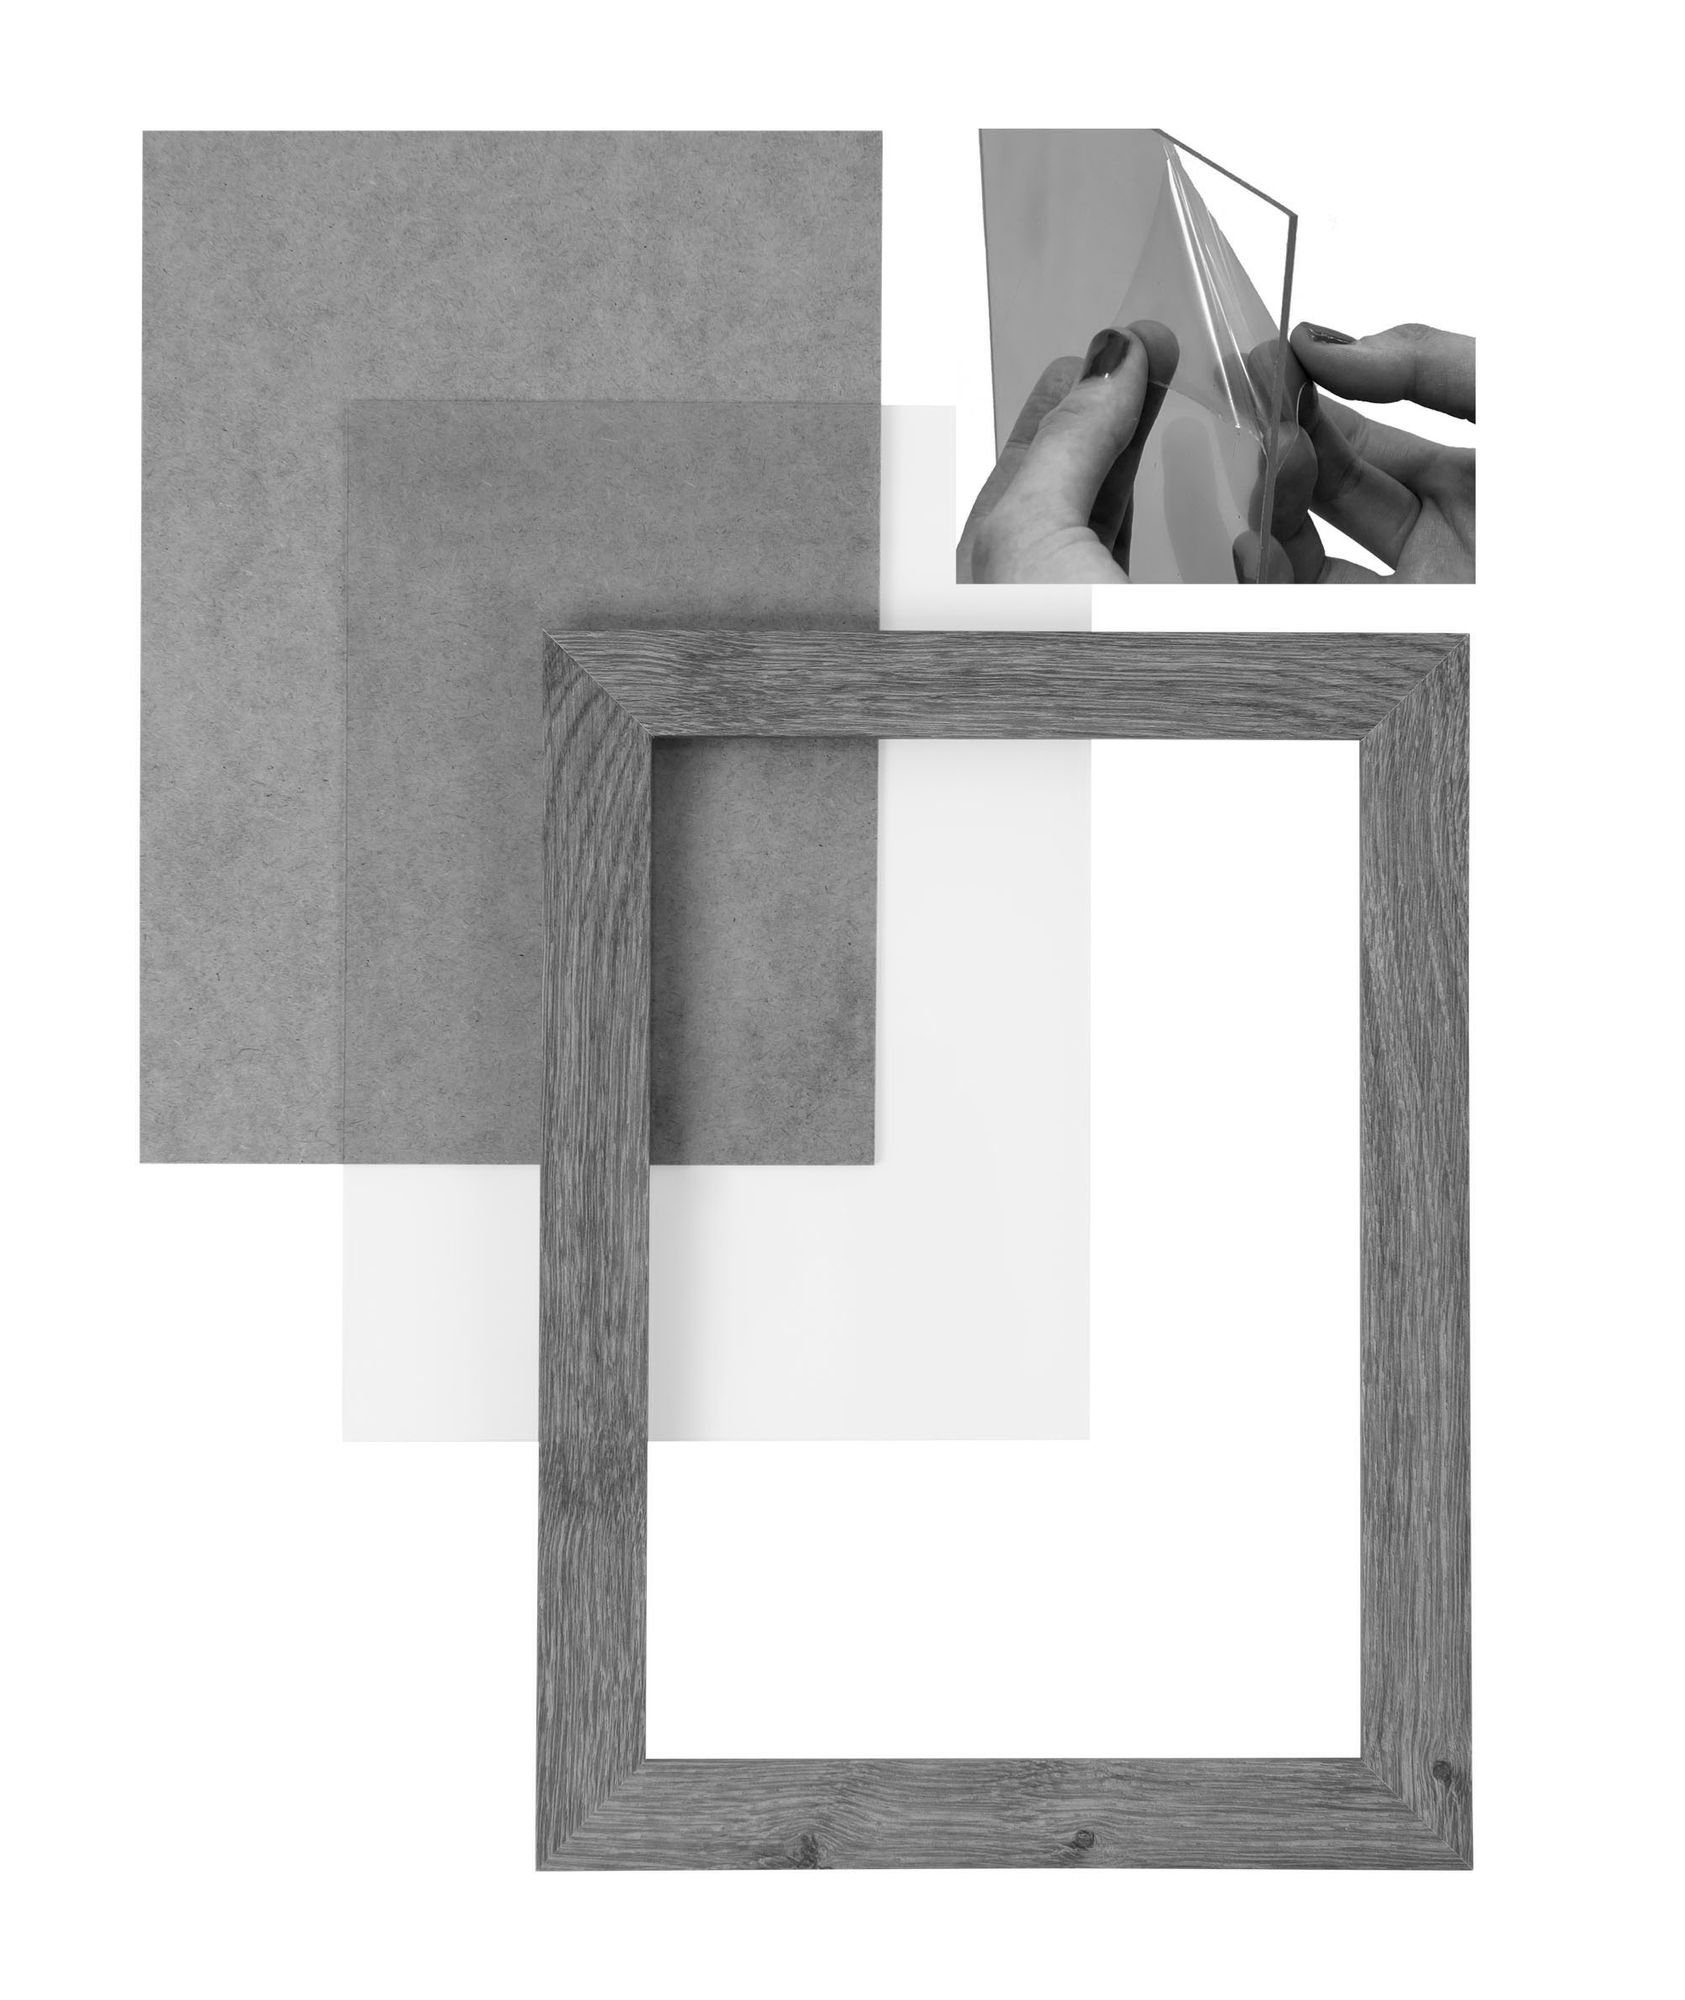 Aufhänger handgefertigt Acrylglas, MDF sonama Rückwand Clamaro Maß Holz nach Bilderrahmen in Moderner Bilderrahmen eckiger Rahmen eiche und 'Collage' CLAMARO inkl. FSC® 60x82